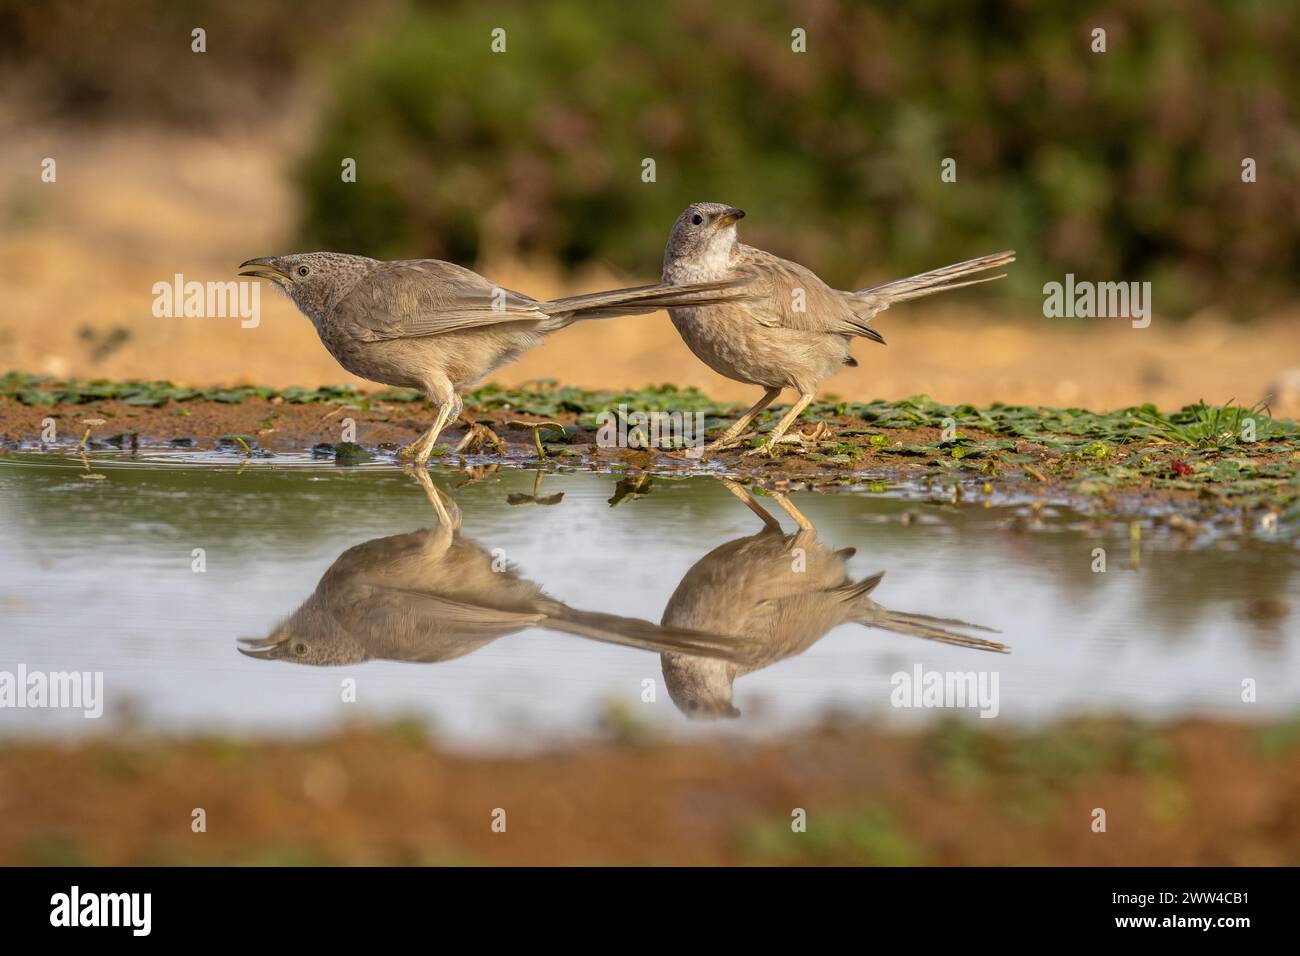 Babbler arabe près de l'eau le babbler arabe (Argya squamiceps) est un oiseau passereau. C'est un oiseau résident de nidification communautaire de broussailles arides dans le M. Banque D'Images